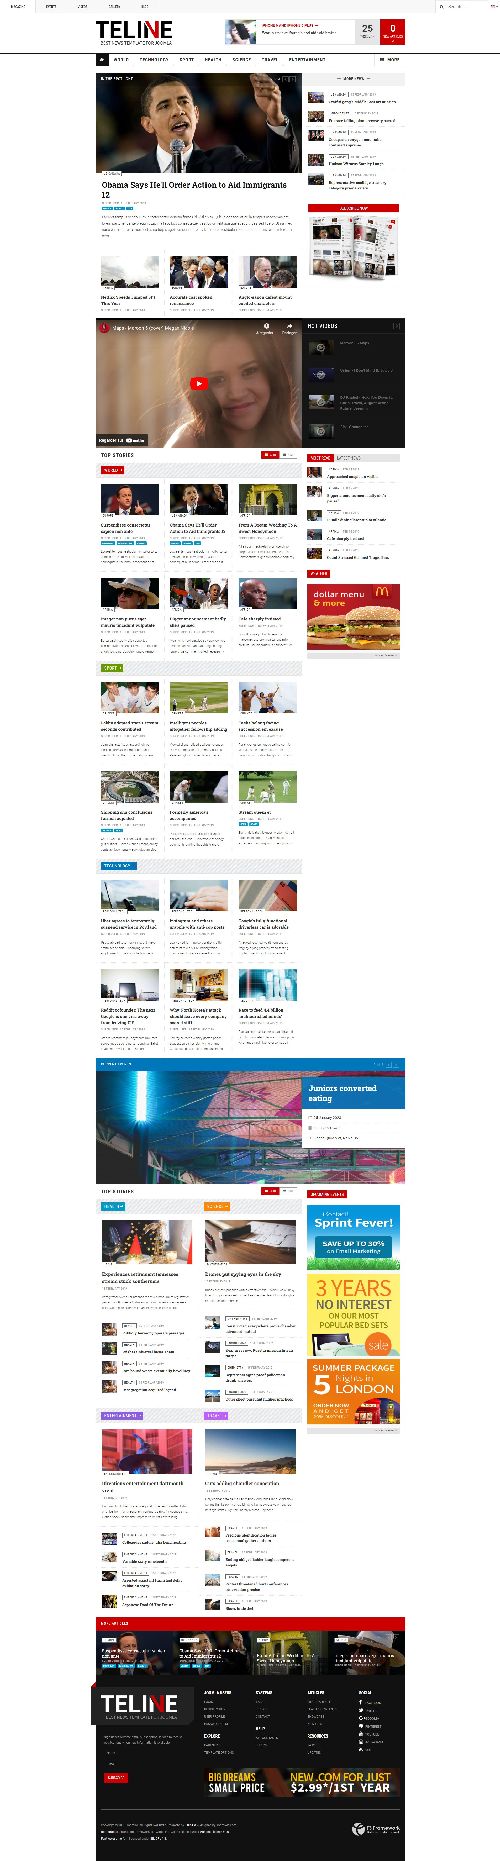 JA Teline V - Joomla 4 Template News and Magazine Websites